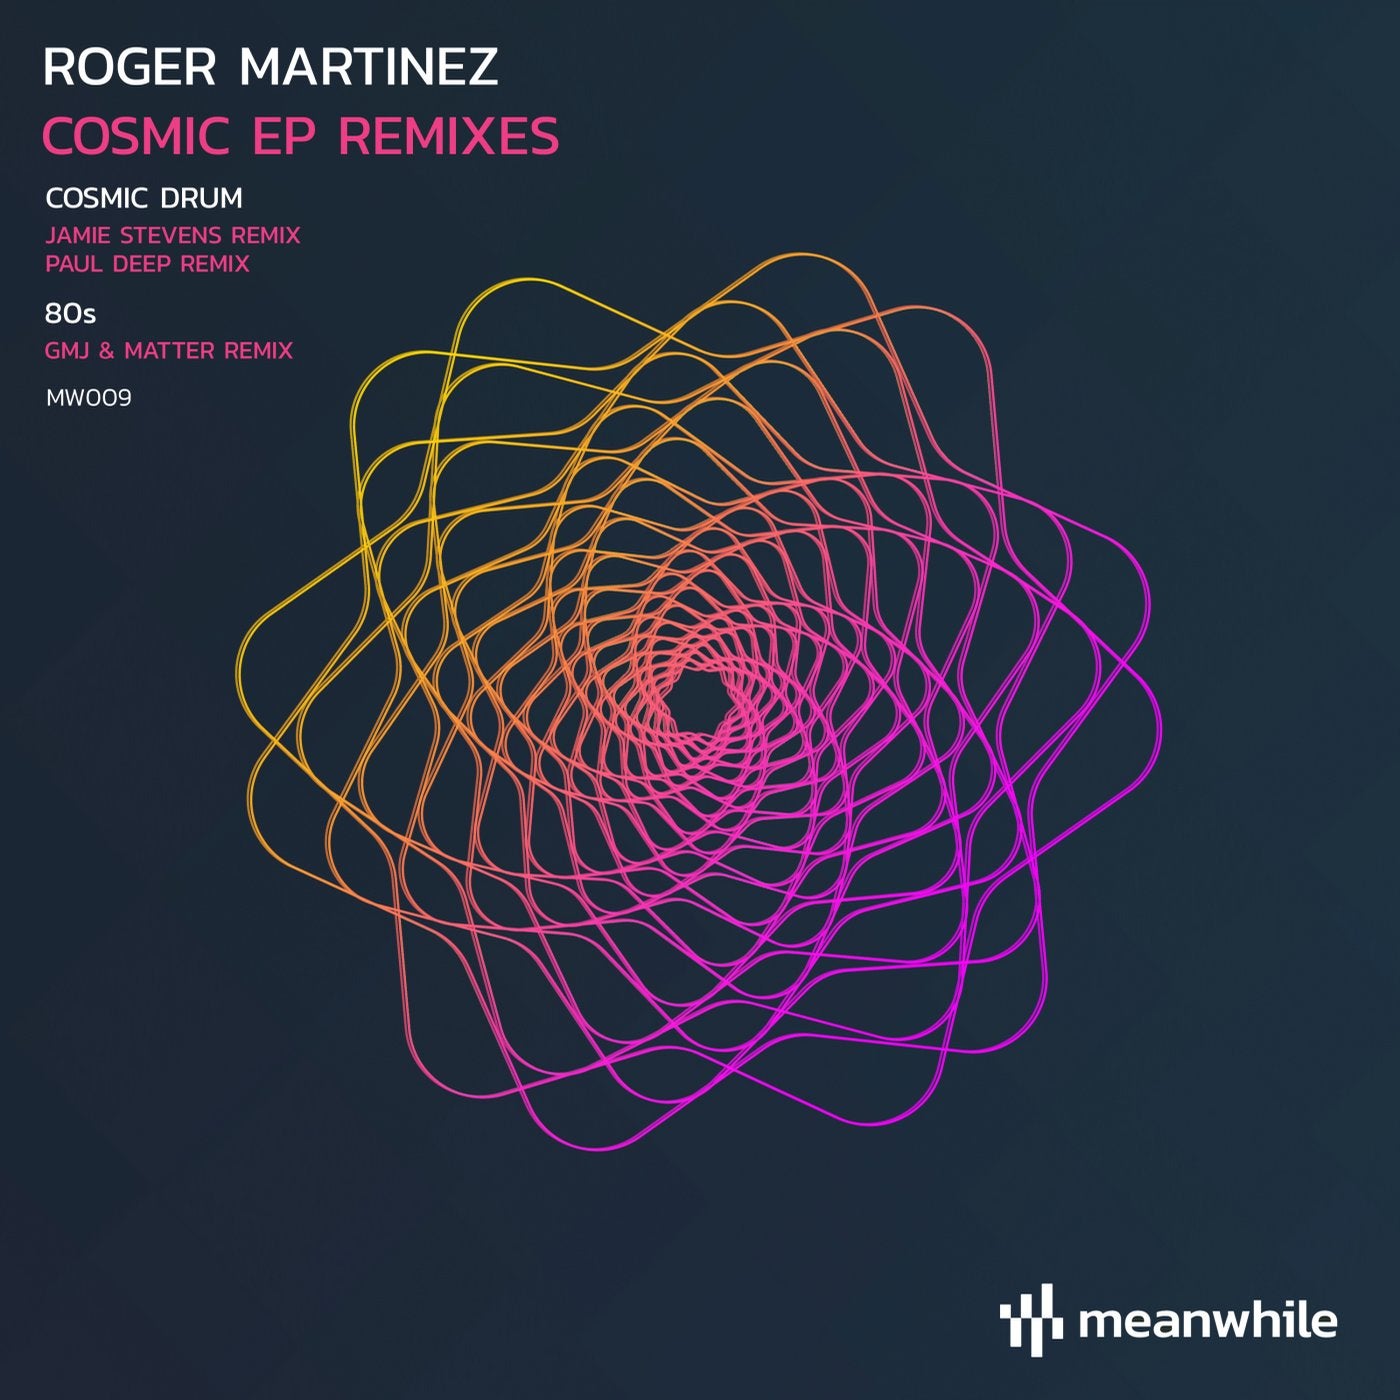 Paul deep. Роджер Мартинес. GMJ, matter. Roger Martinez DJ. (Jamie Stevens Remix).